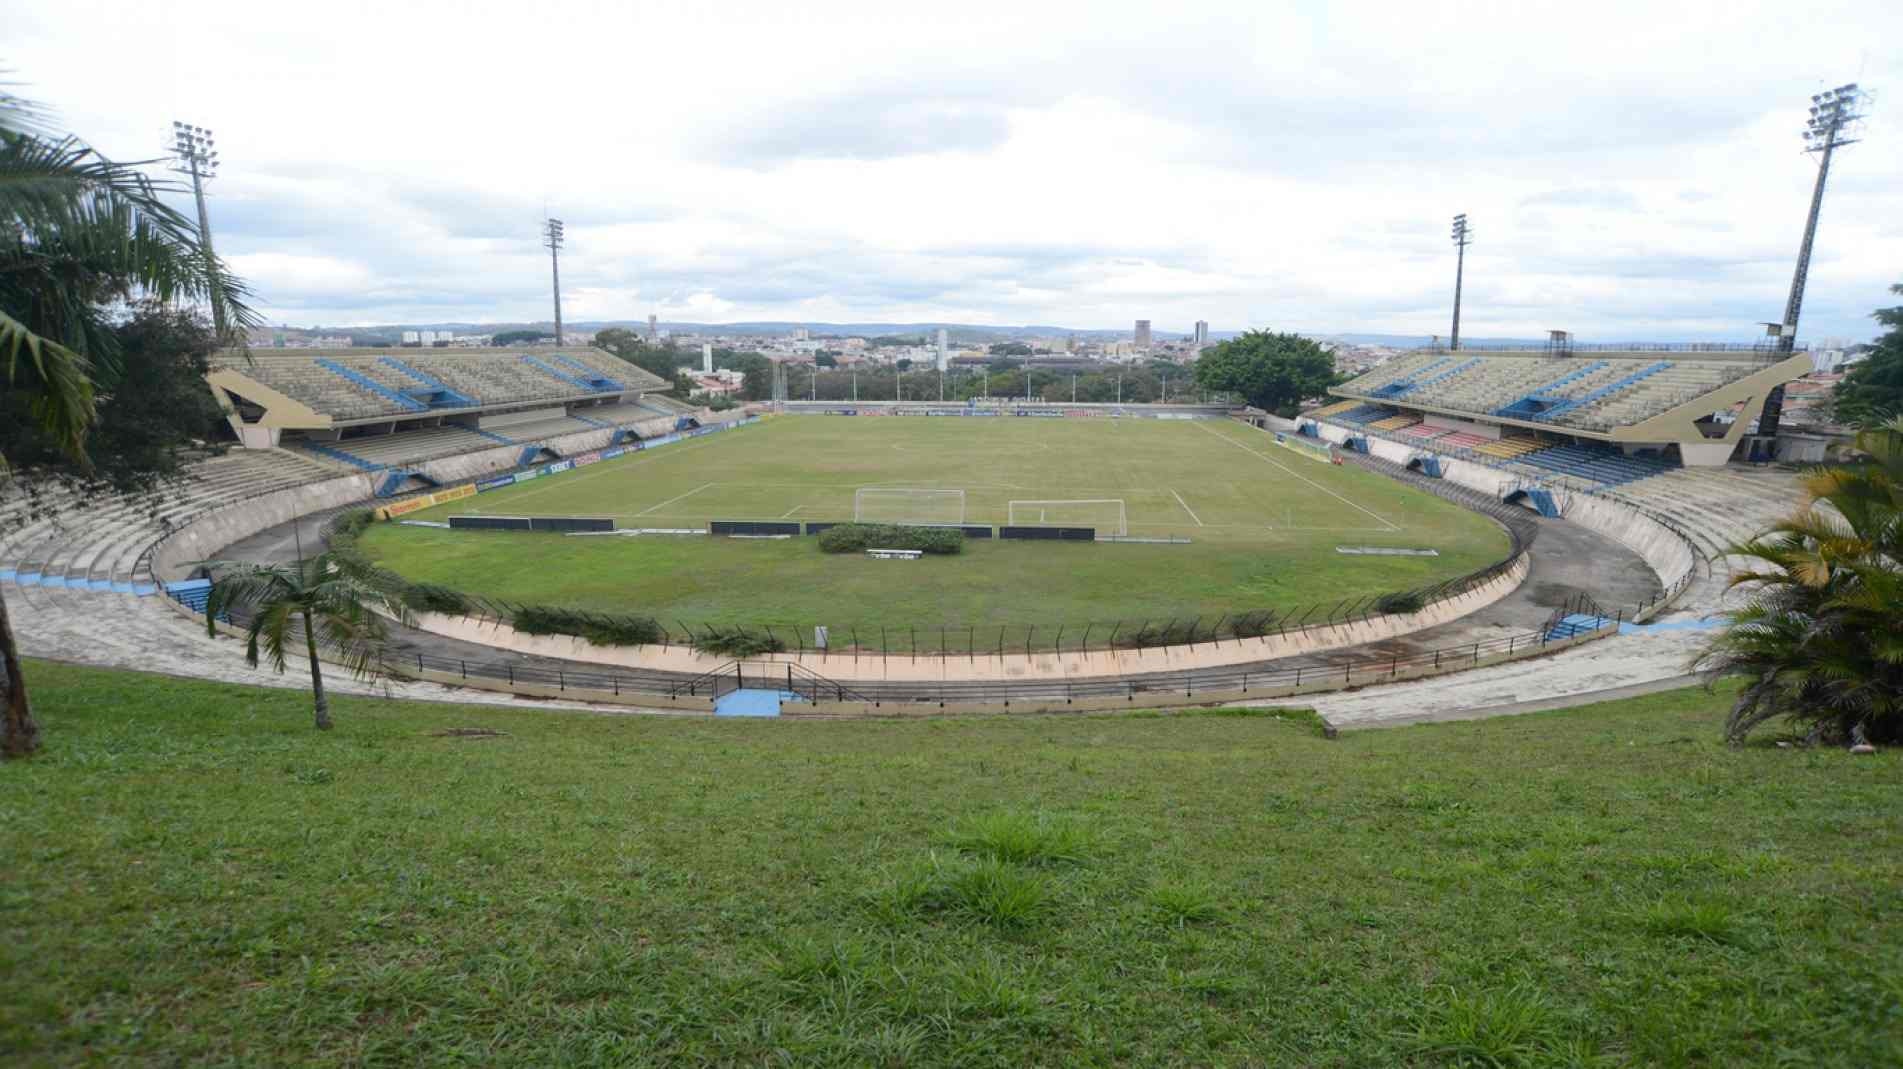 Estádio Municipal de Sorocaba Walter Ribeiro vista aberta do gramado.